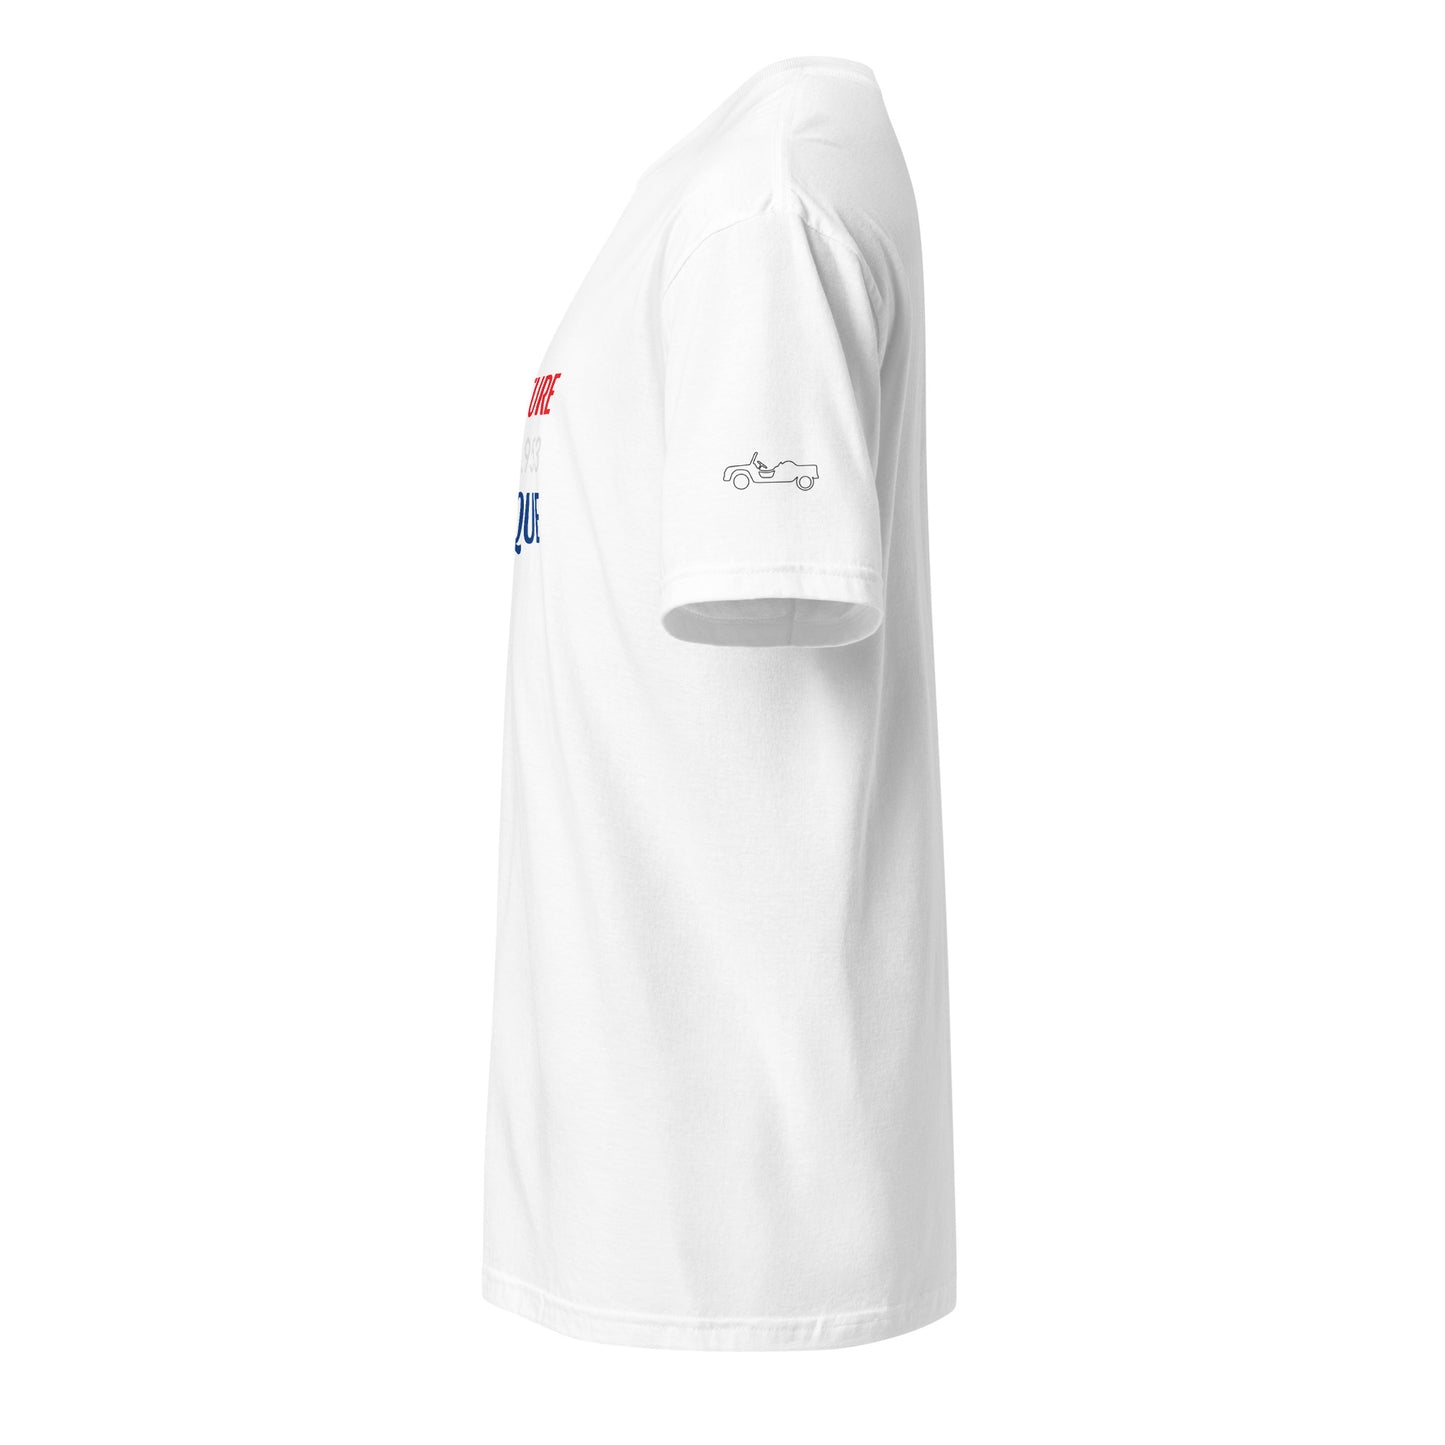 1/144.953 Voiture Unique Citroën Méhari T-shirt unisex - Black, Navy or White